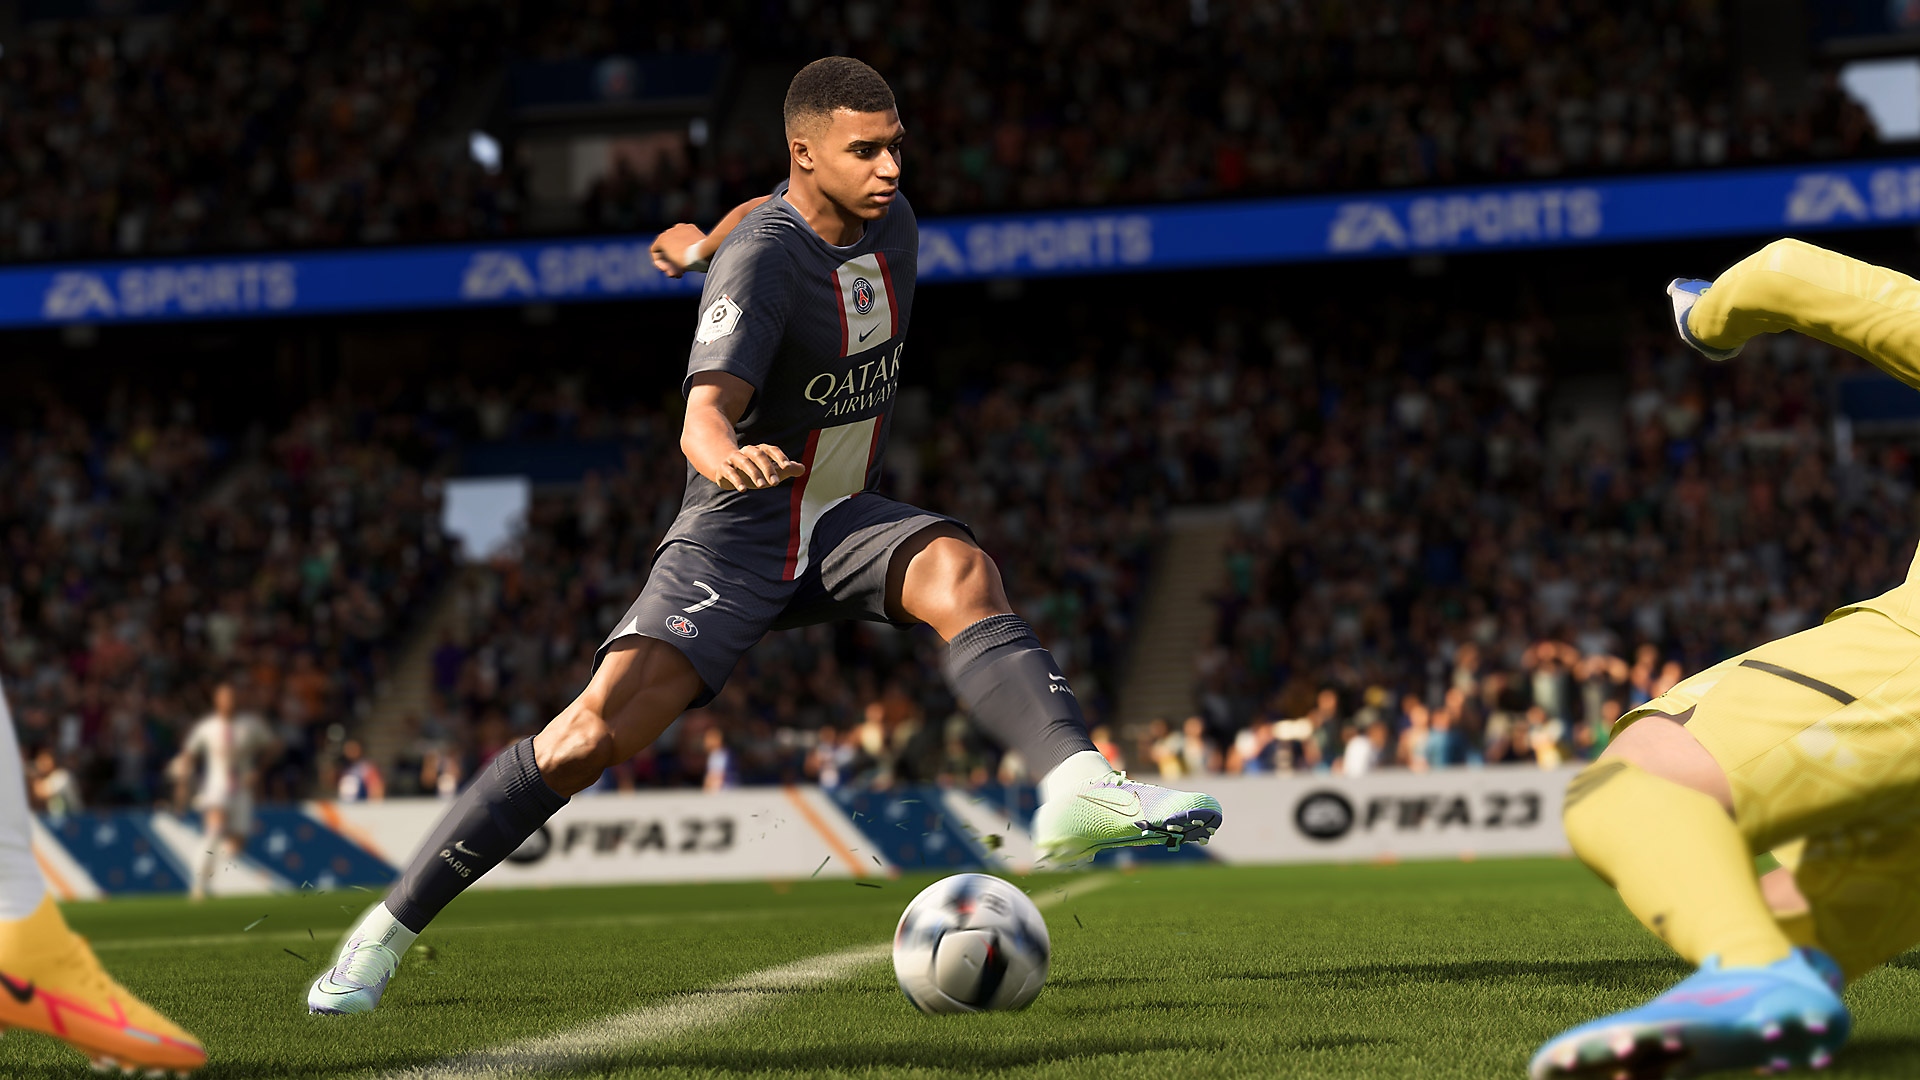 Az EA Sports FIFA 23 képernyőképe egy épp lőni készülő játékost mutat